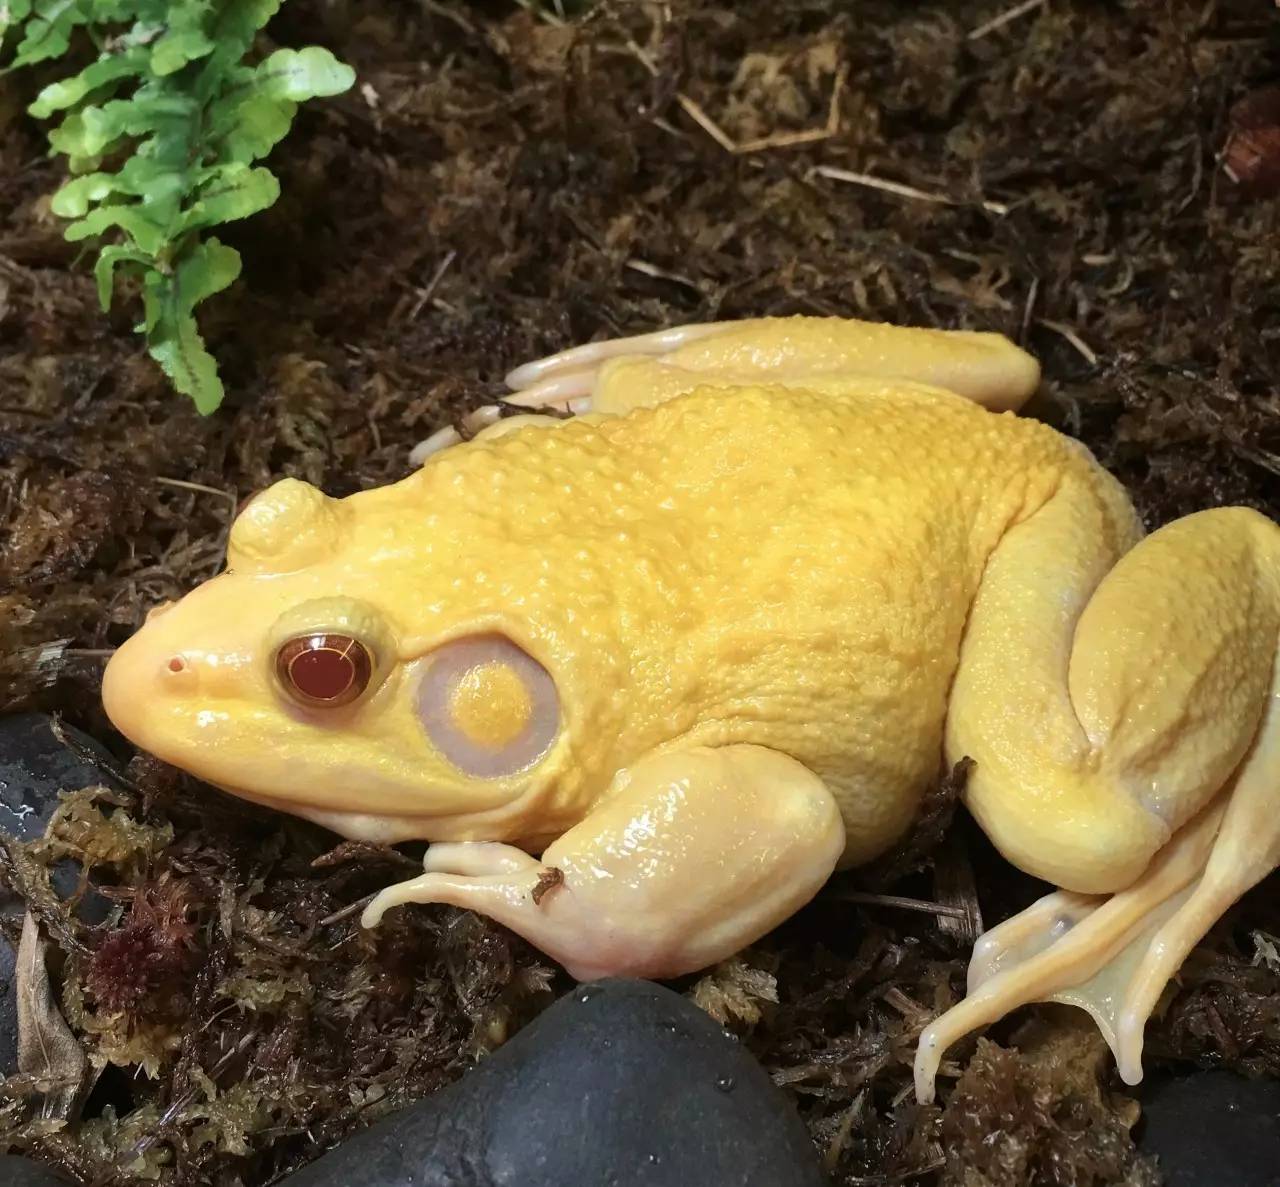 【科普】美国牛蛙在卵中就学会逃避捕食者